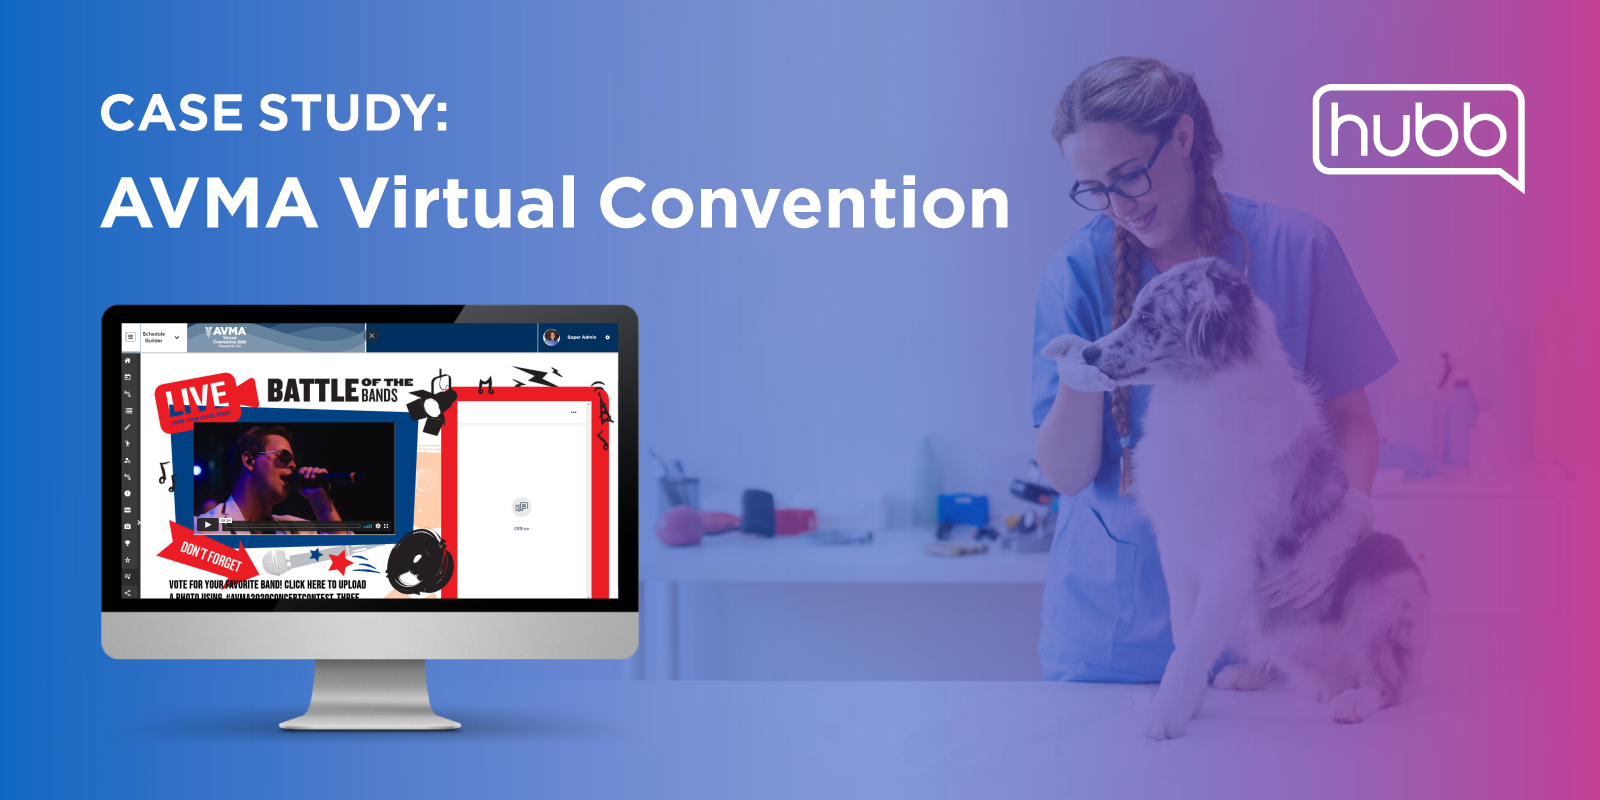 Case Study: AVMA Virtual Convention